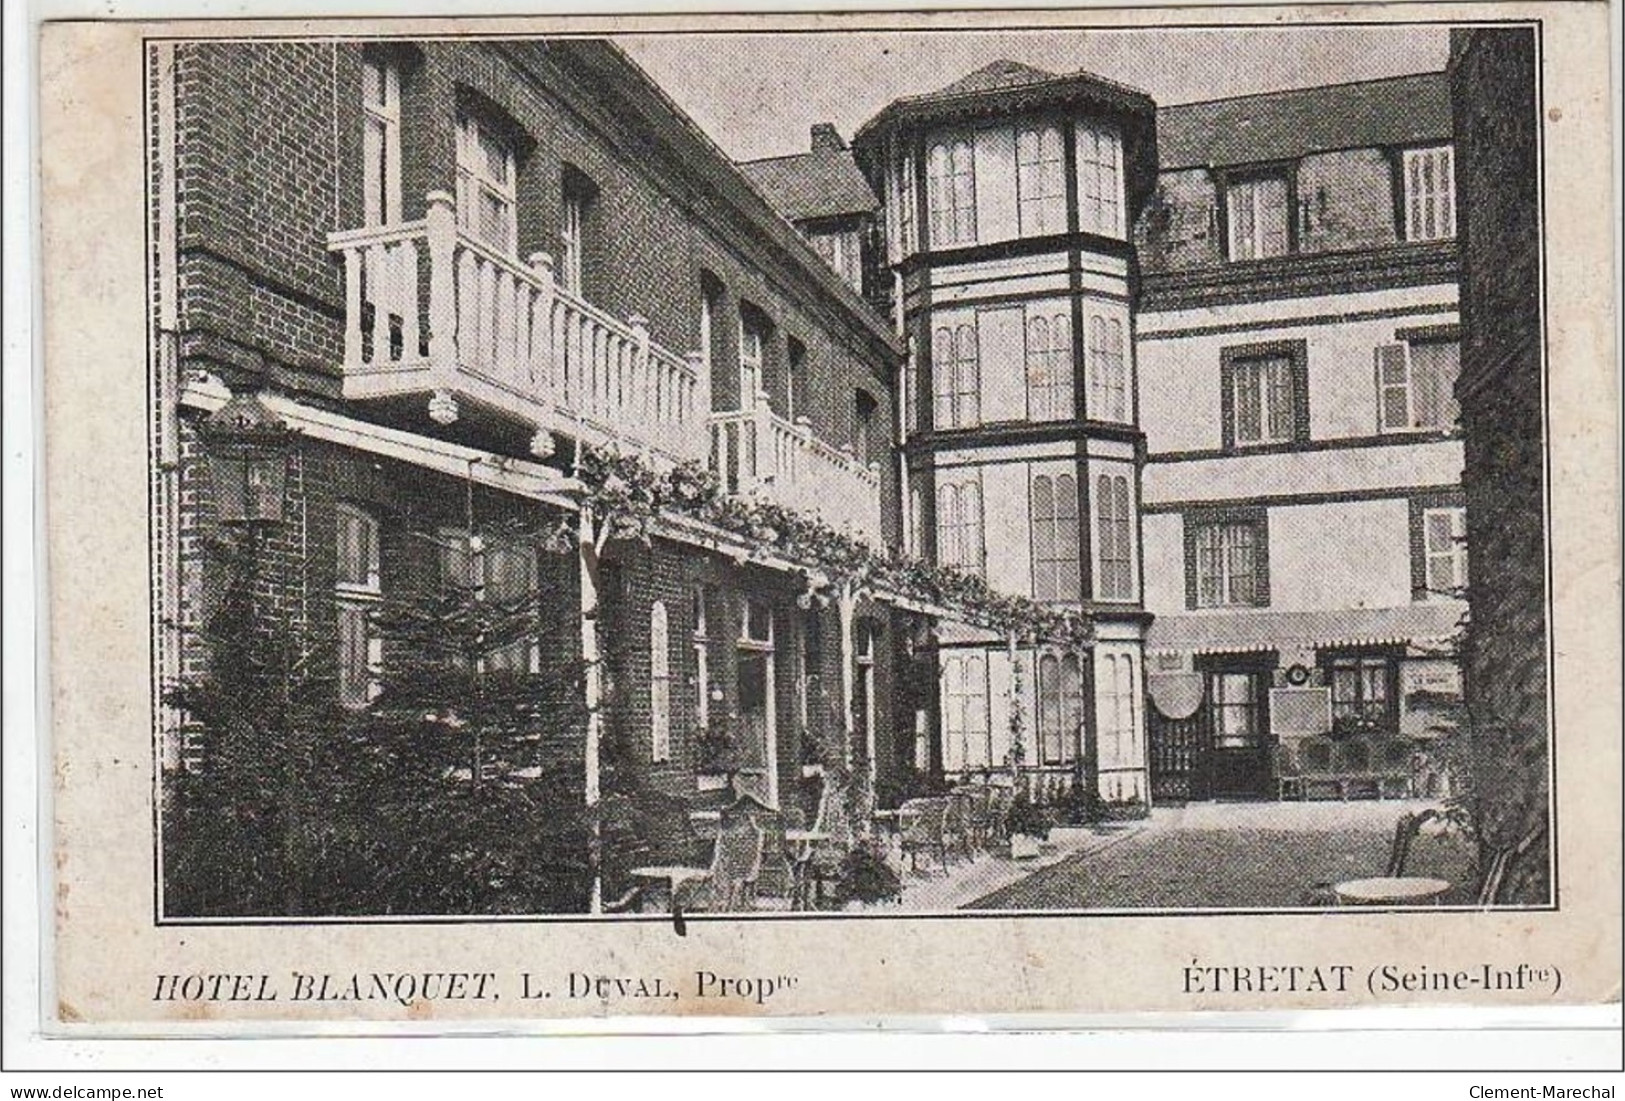 ETRETAT : Hôtel Blanquet, L. Duval Propriétaire - état - Etretat